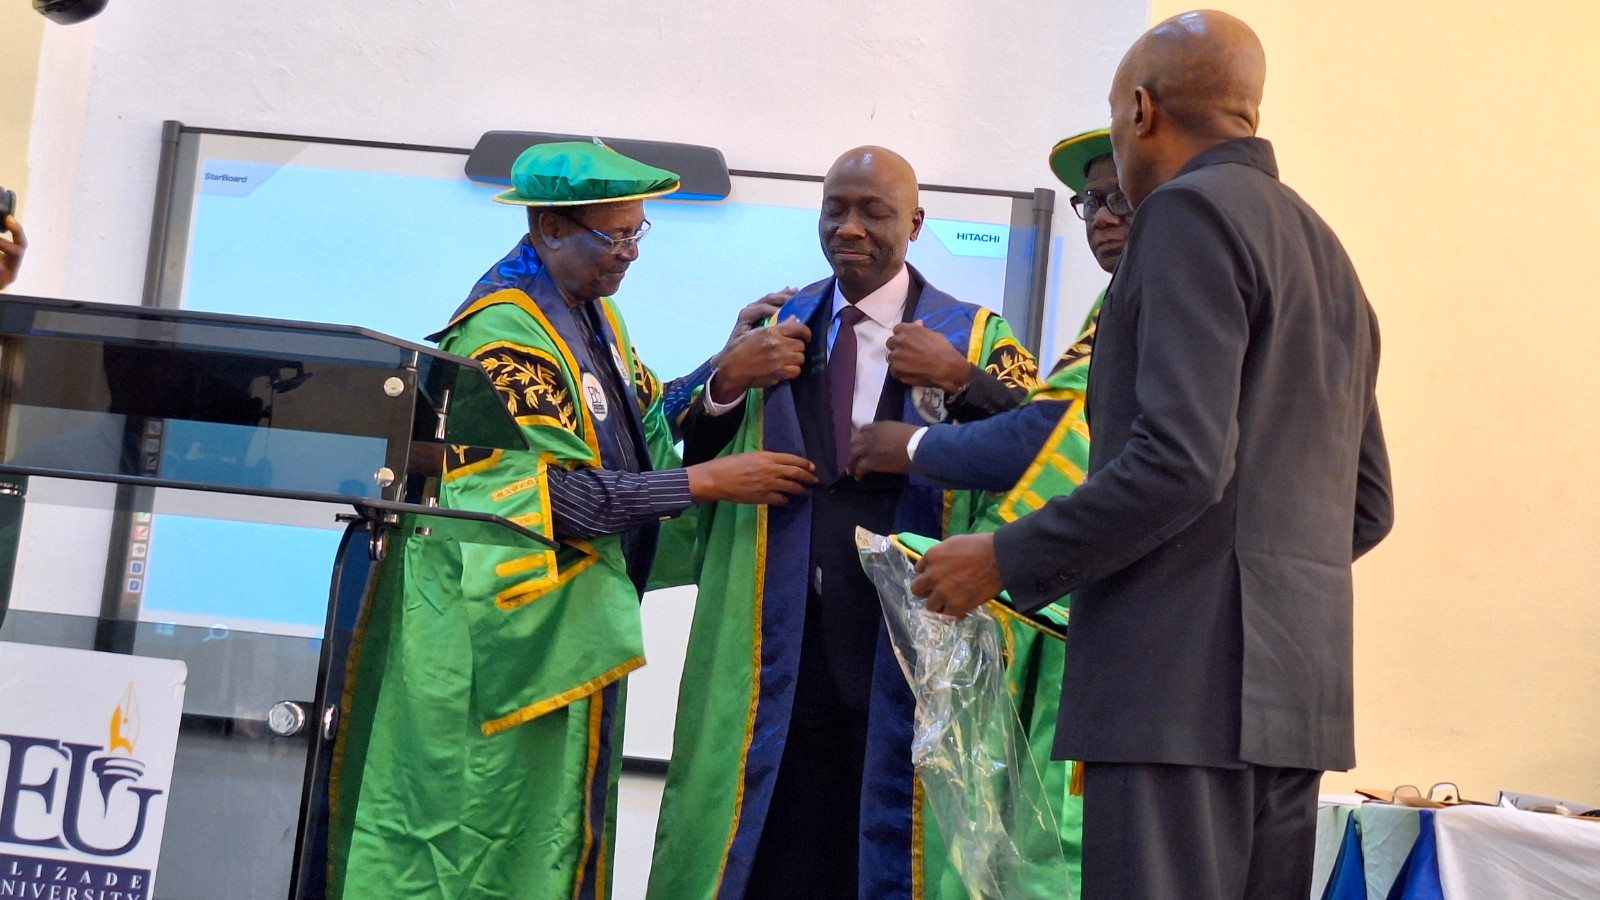 El Dr. Ijadunola toma posesión como Vicerrector de la Universidad de Elizade